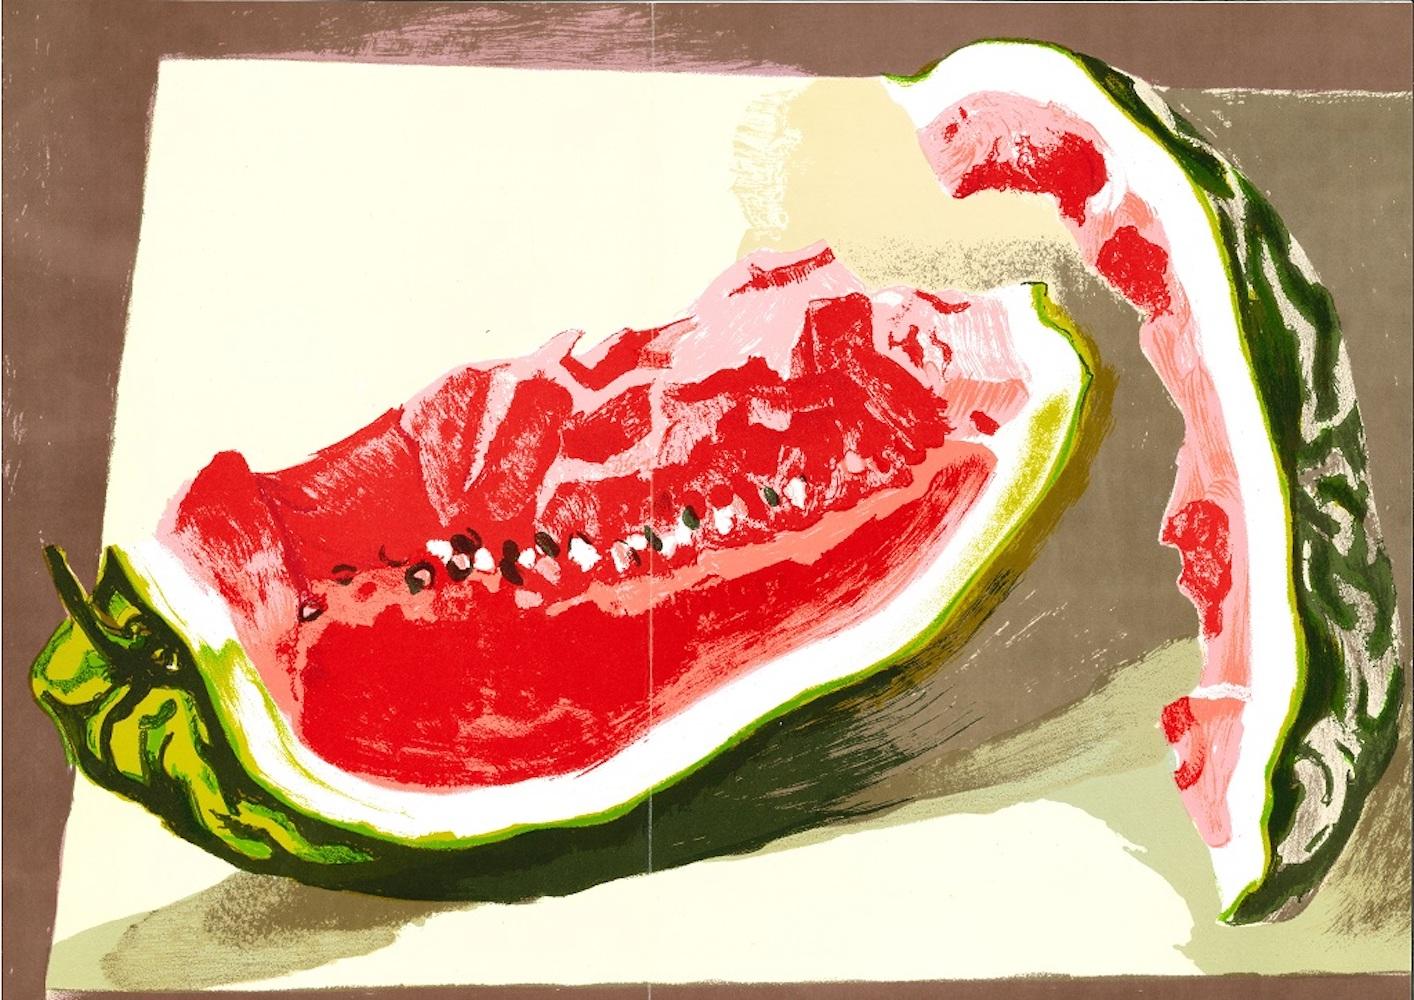 Watermelon est une lithographie en couleurs mixtes réalisée par l'artiste sicilien Renato Guttuso en 1982

L'œuvre d'art provient de  XXeme Siècle Paris/New York ; Imprimeur Graphis Arte Livorno/Roma.

Référence : Renato Guttuso, dipinti, tecniche